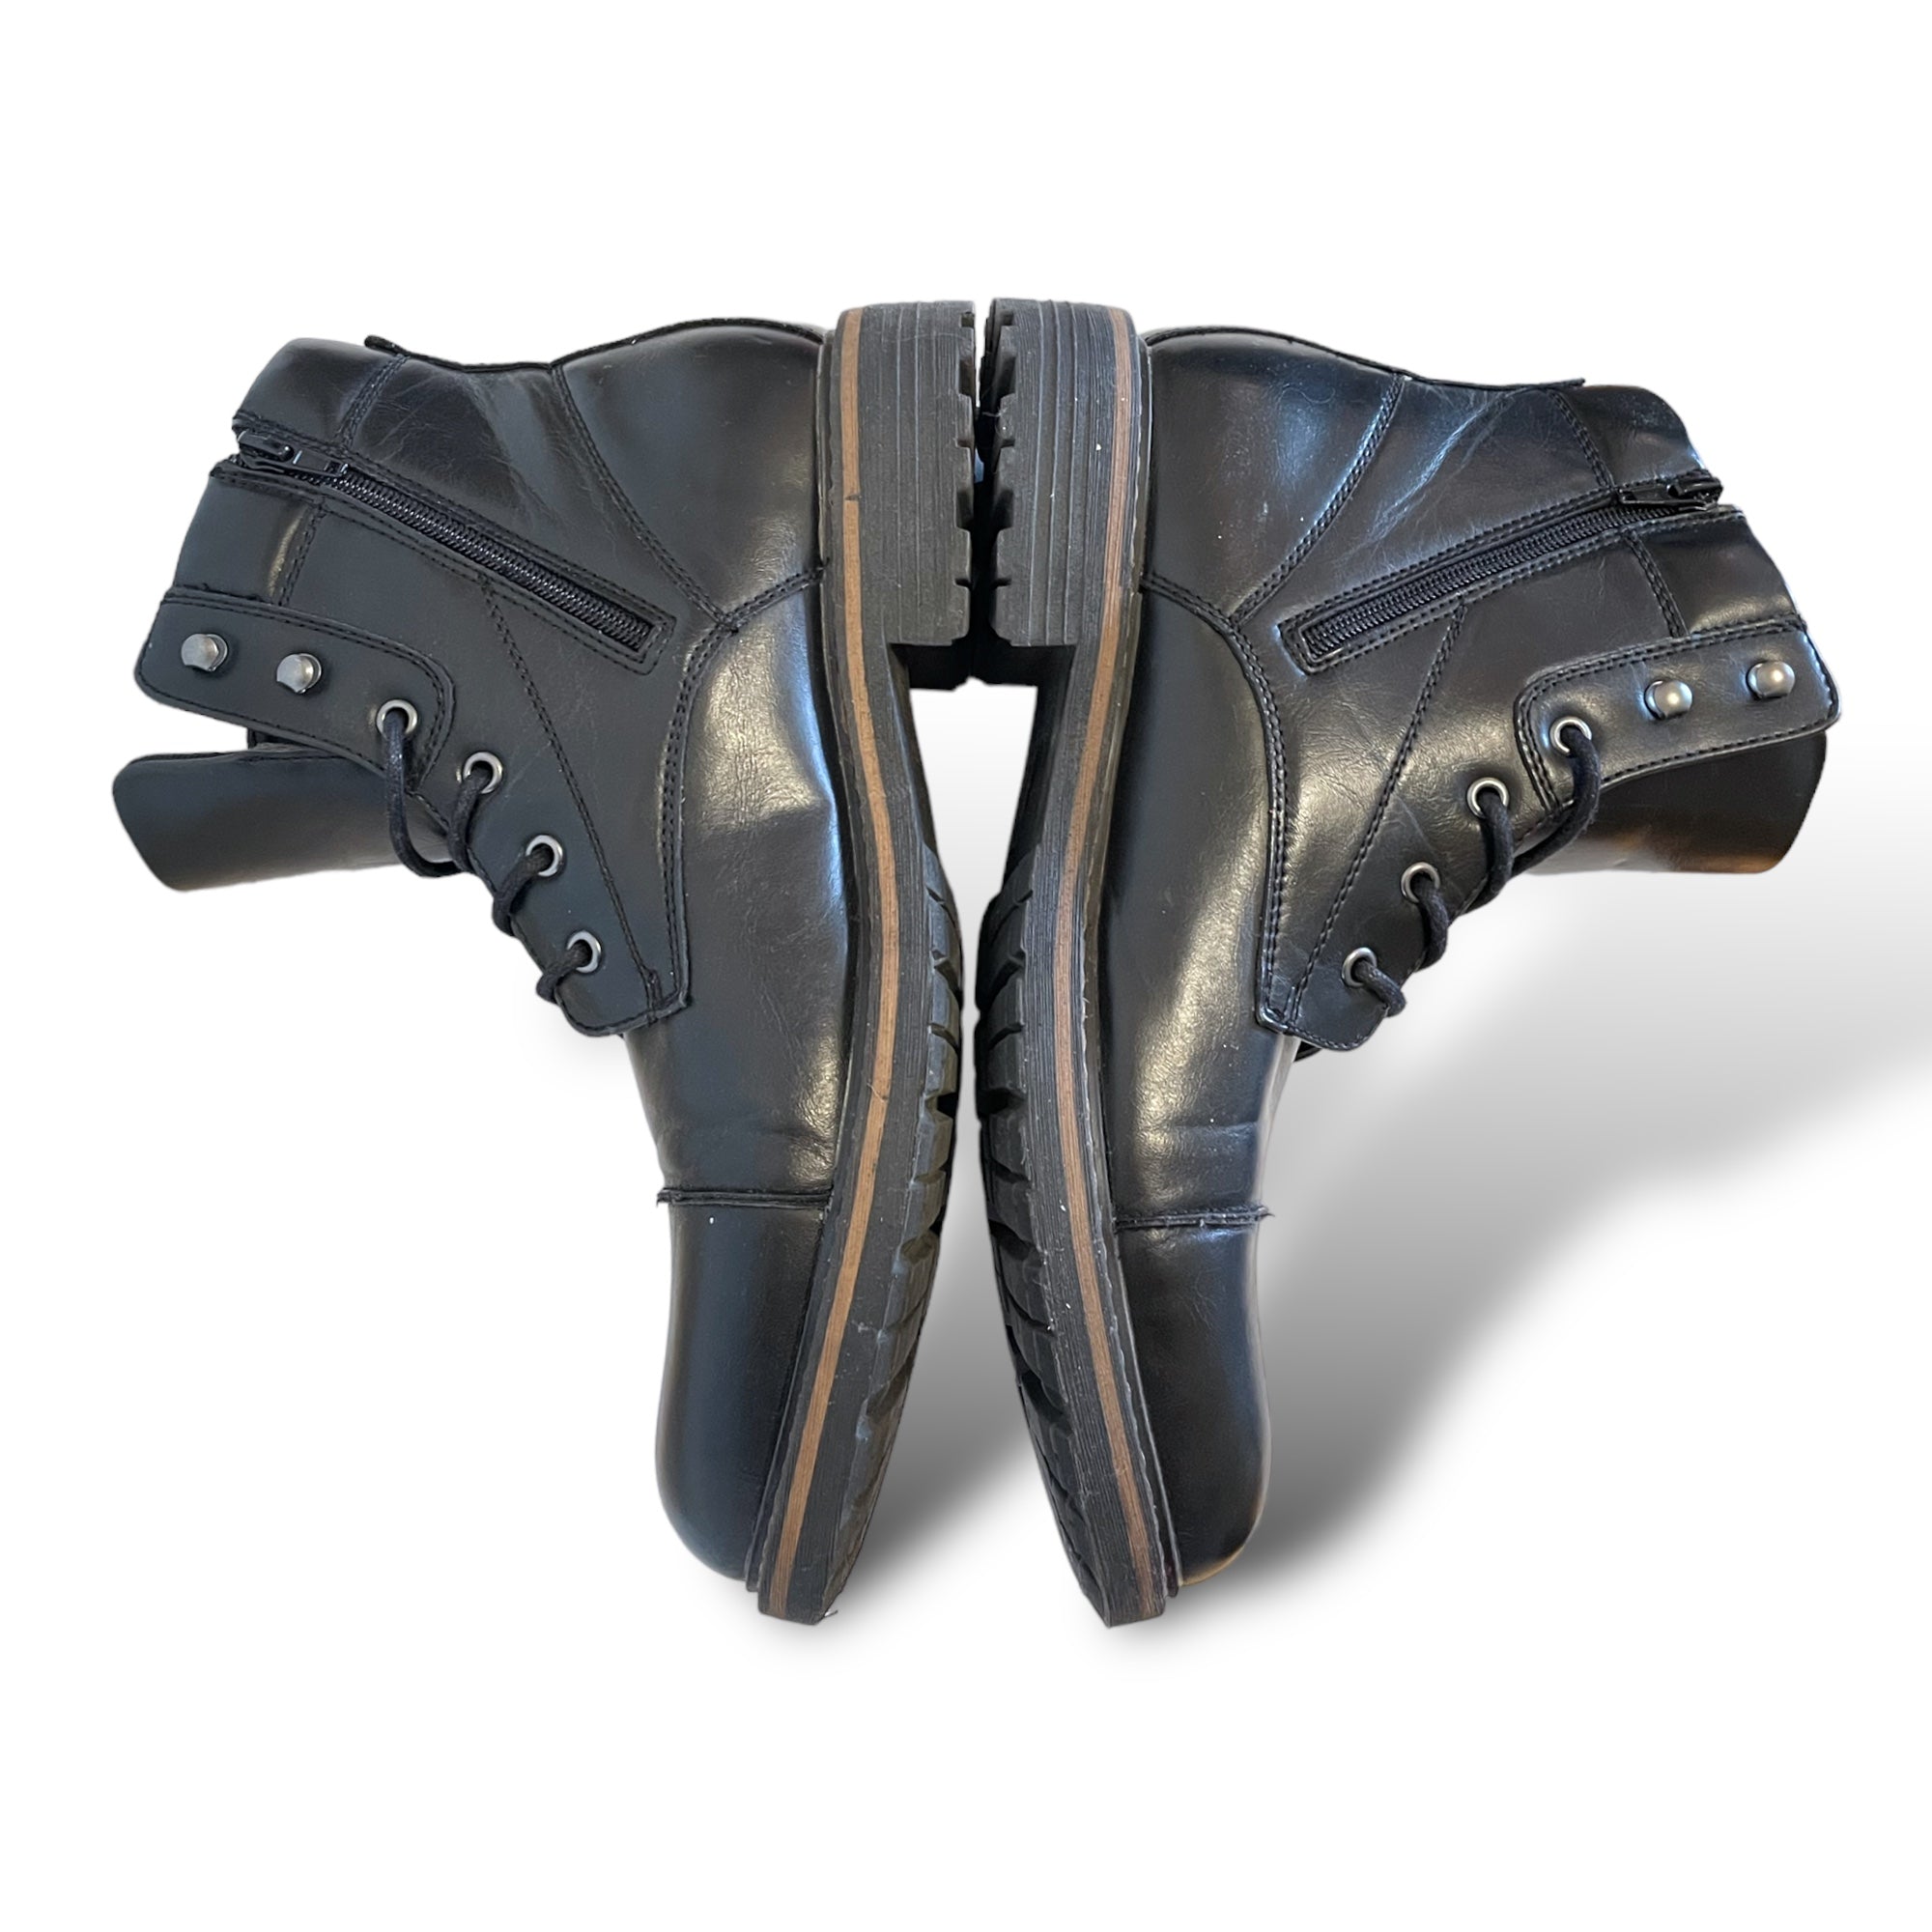 Mens PUBLIC OPINION Black Combat Boots |Size: 10.5|